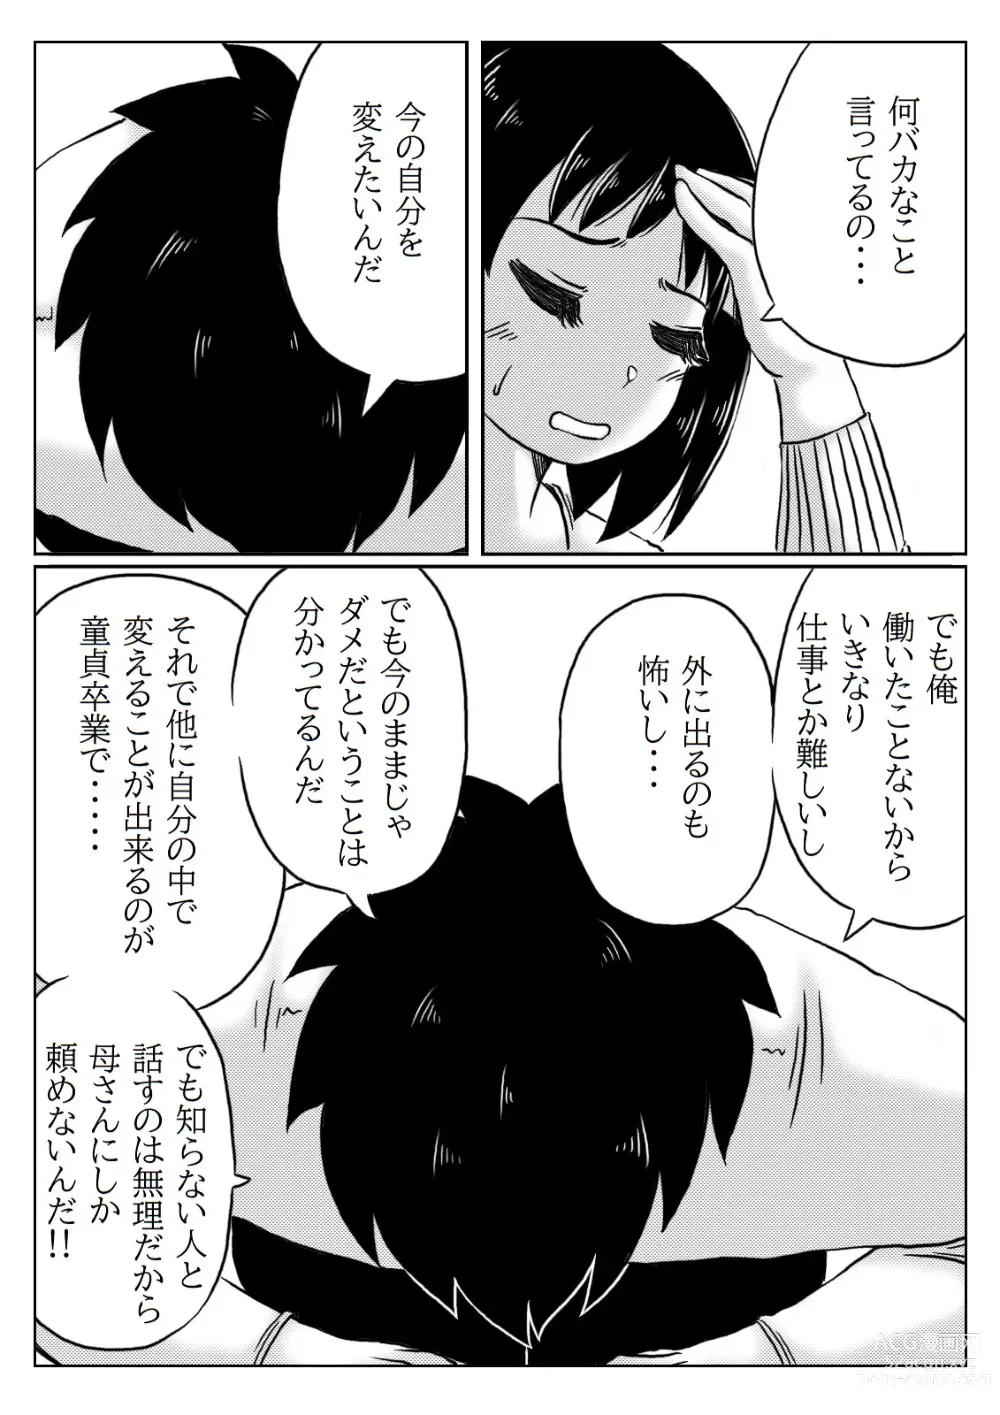 Page 4 of doujinshi Haha to Jibun wo Kaetai Musuko